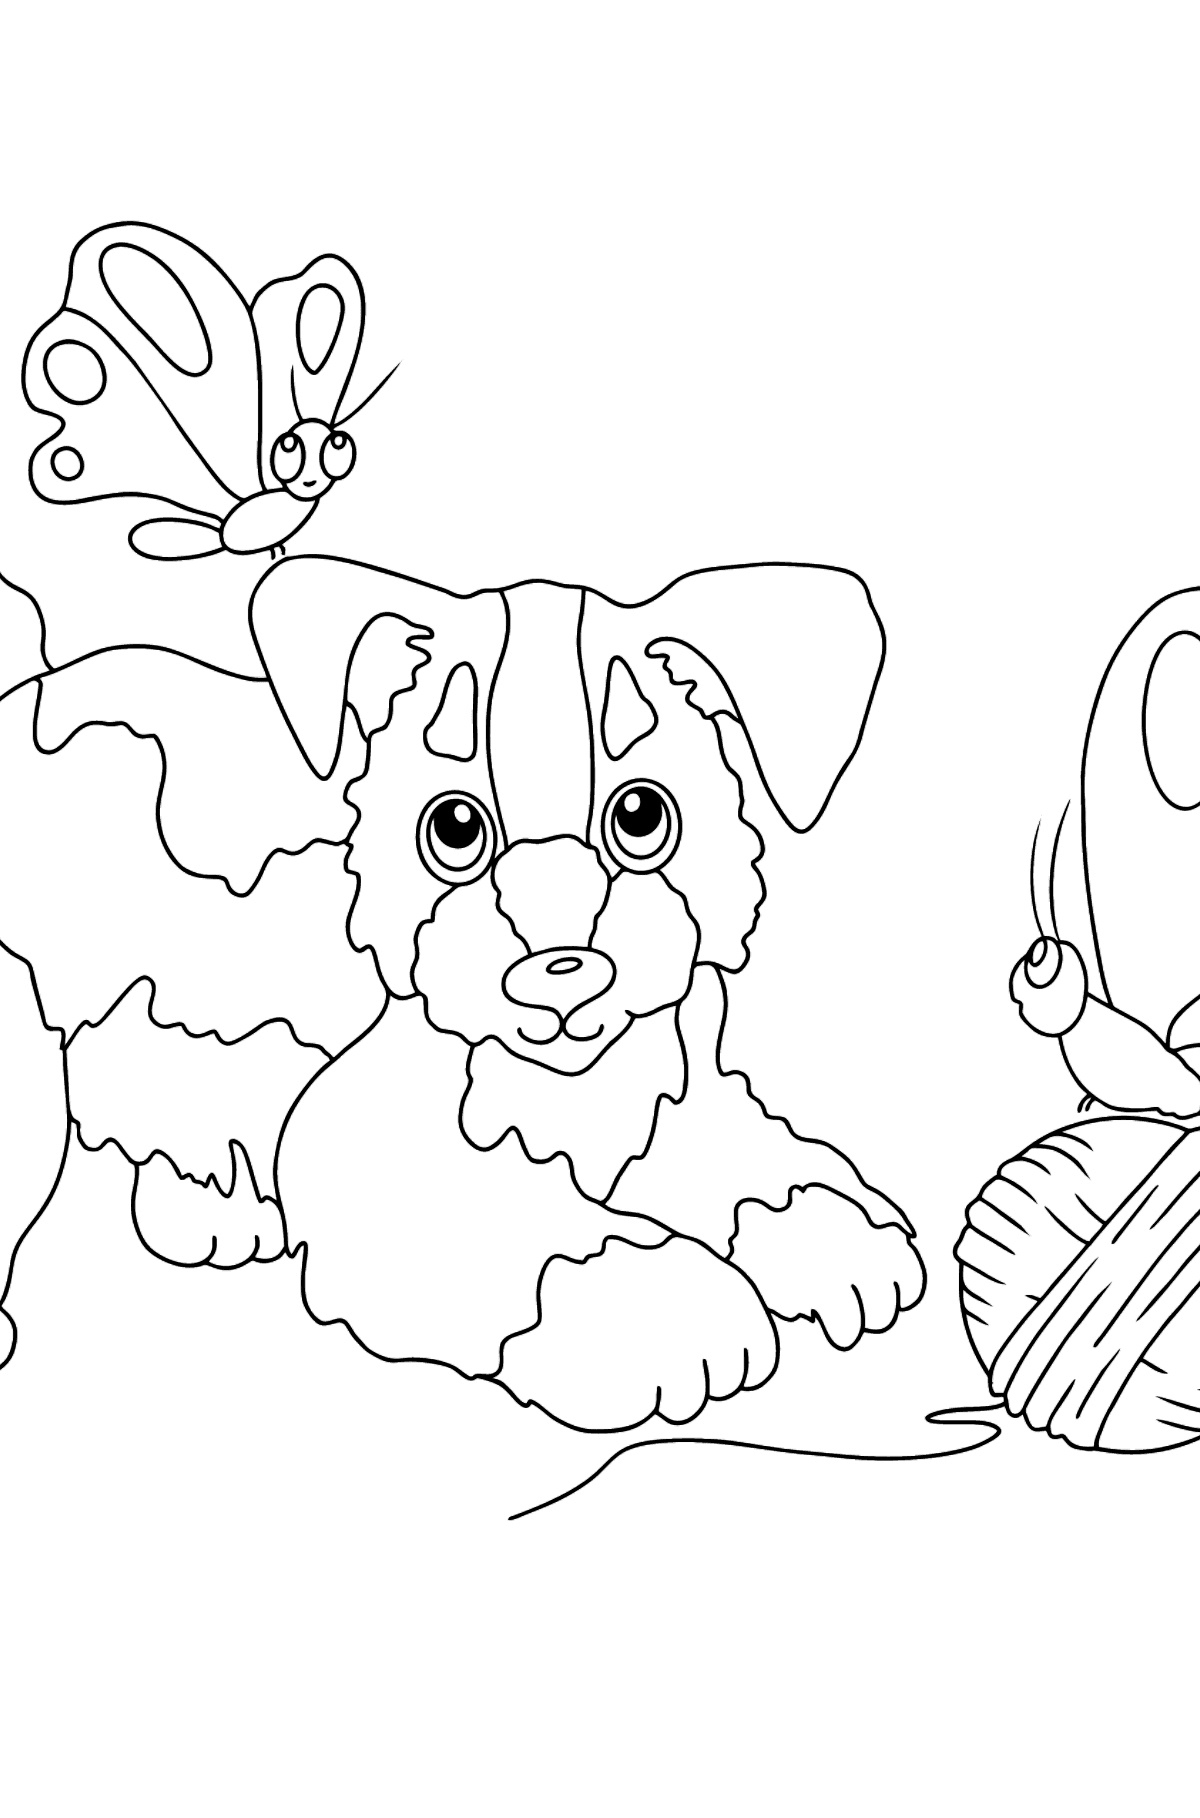 Värityskuva koira leikkii (vaikea) - Värityskuvat lapsille